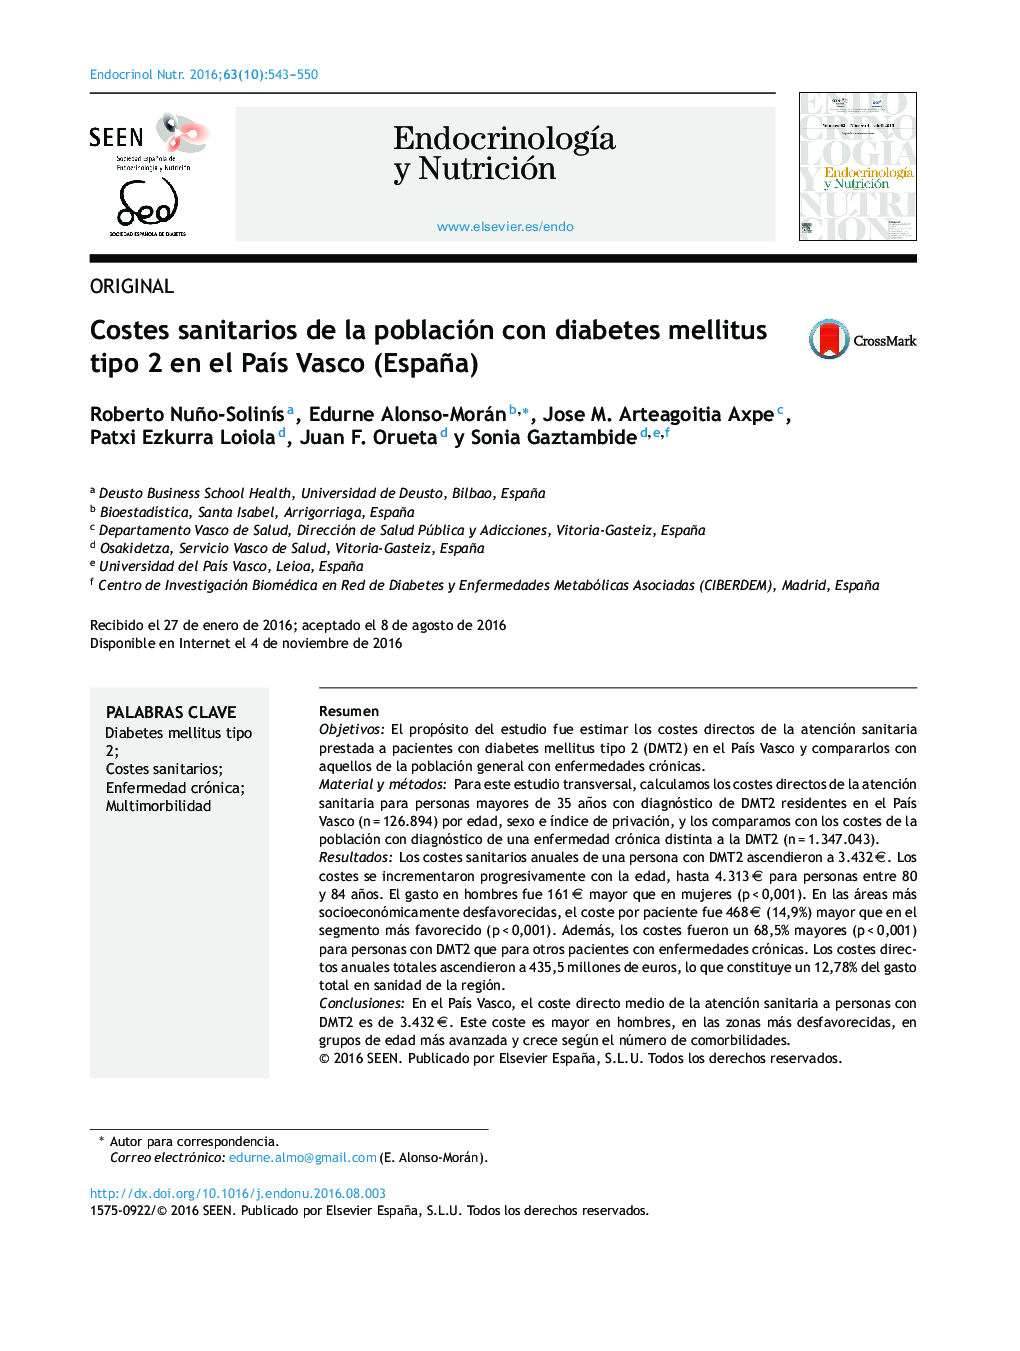 Costes sanitarios de la población con diabetes mellitus tipo 2 en el PaÃ­s Vasco (España)